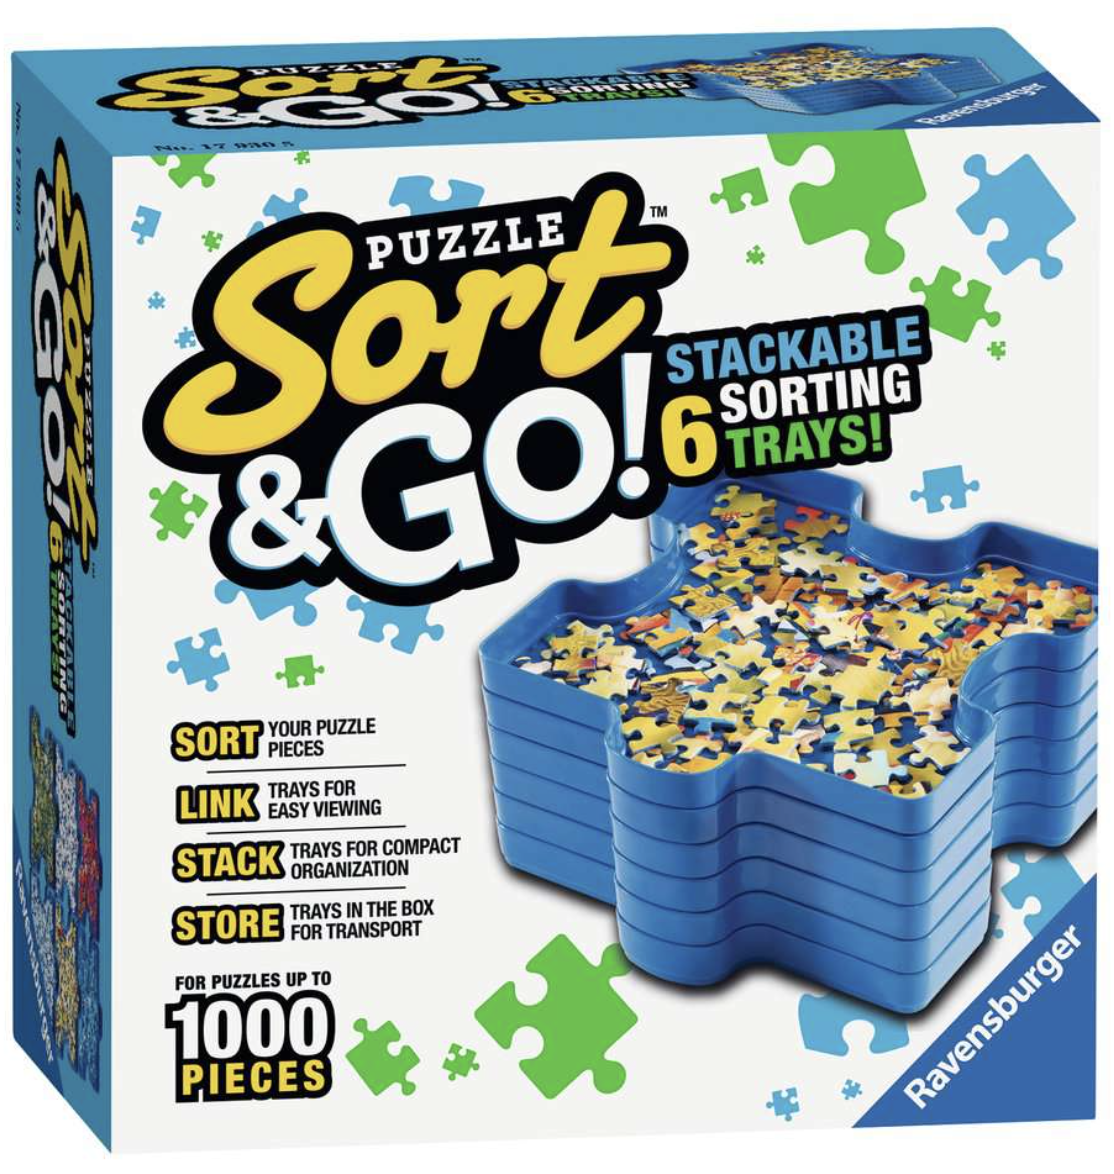 Puzzle Sort & Go! Puzzle Organizer